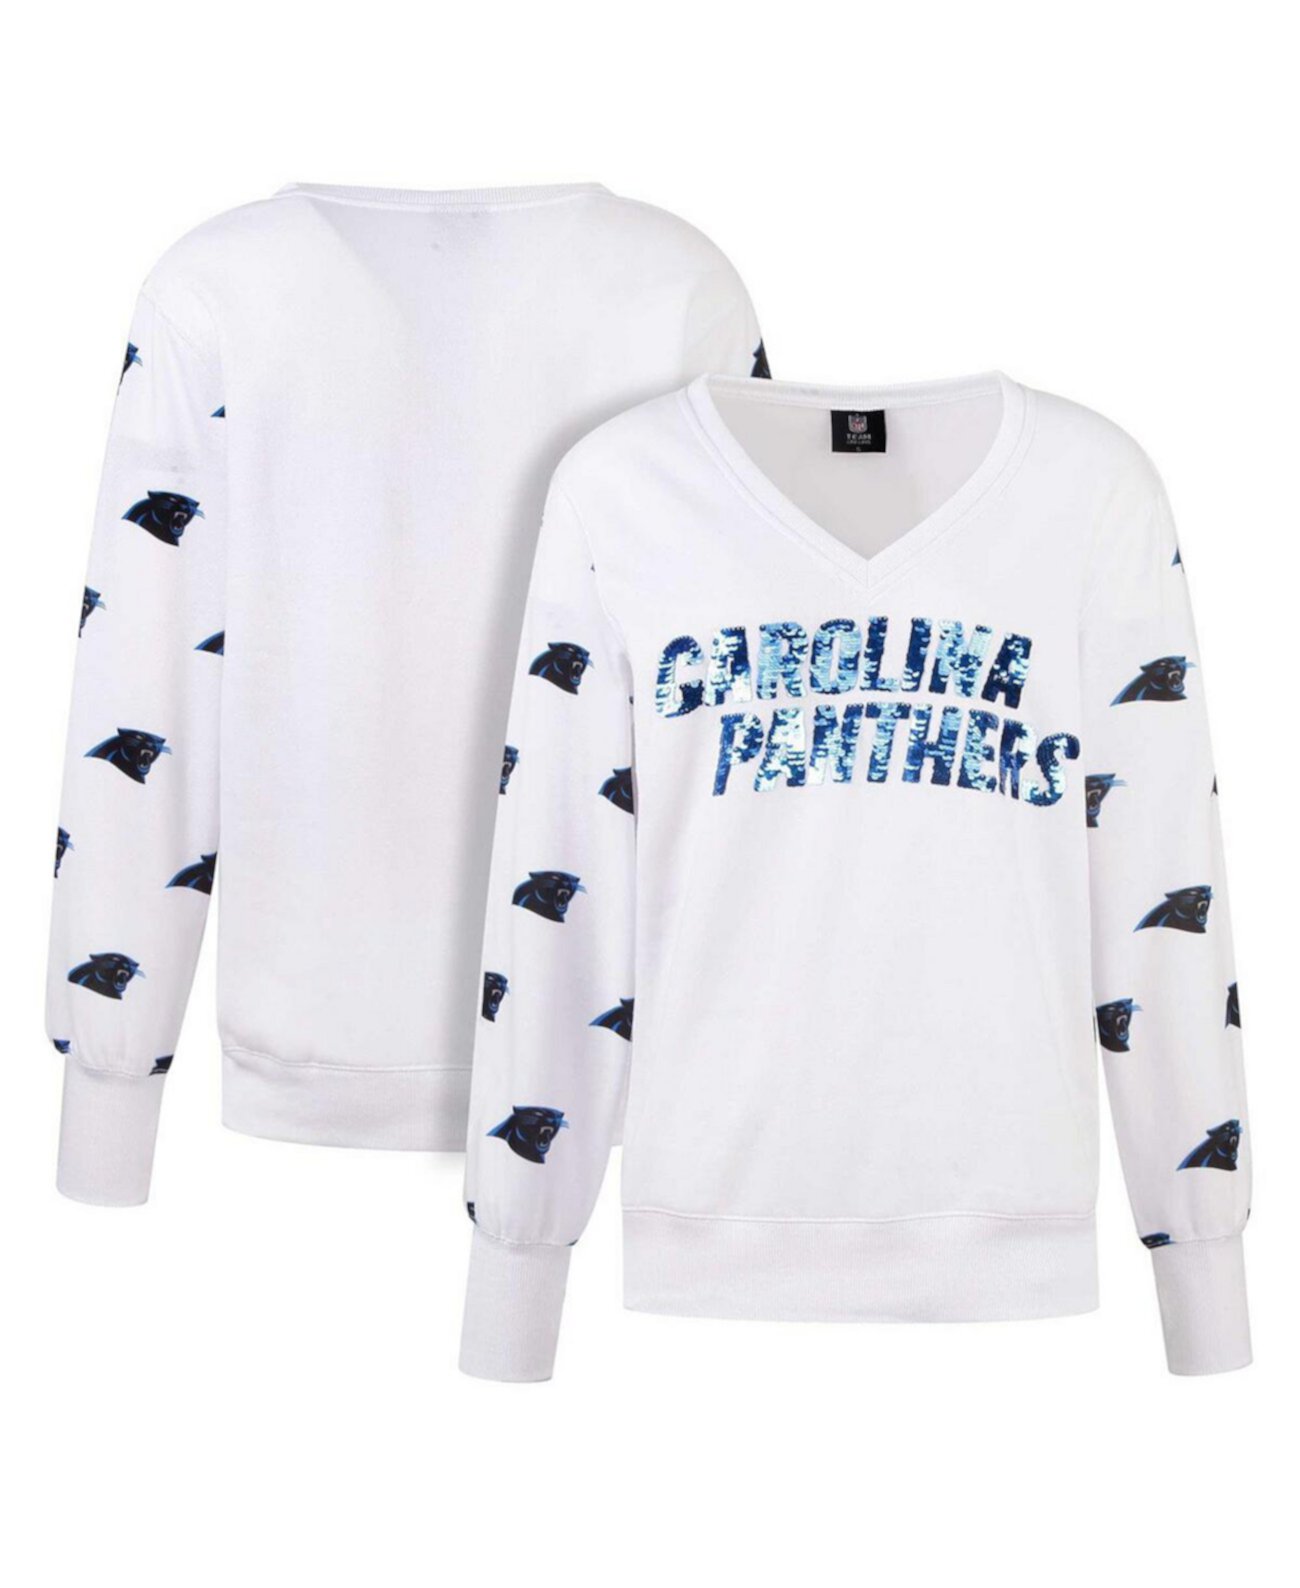 Женская белая флисовая футболка с v-образным вырезом и пайетками Carolina Panthers Cuce